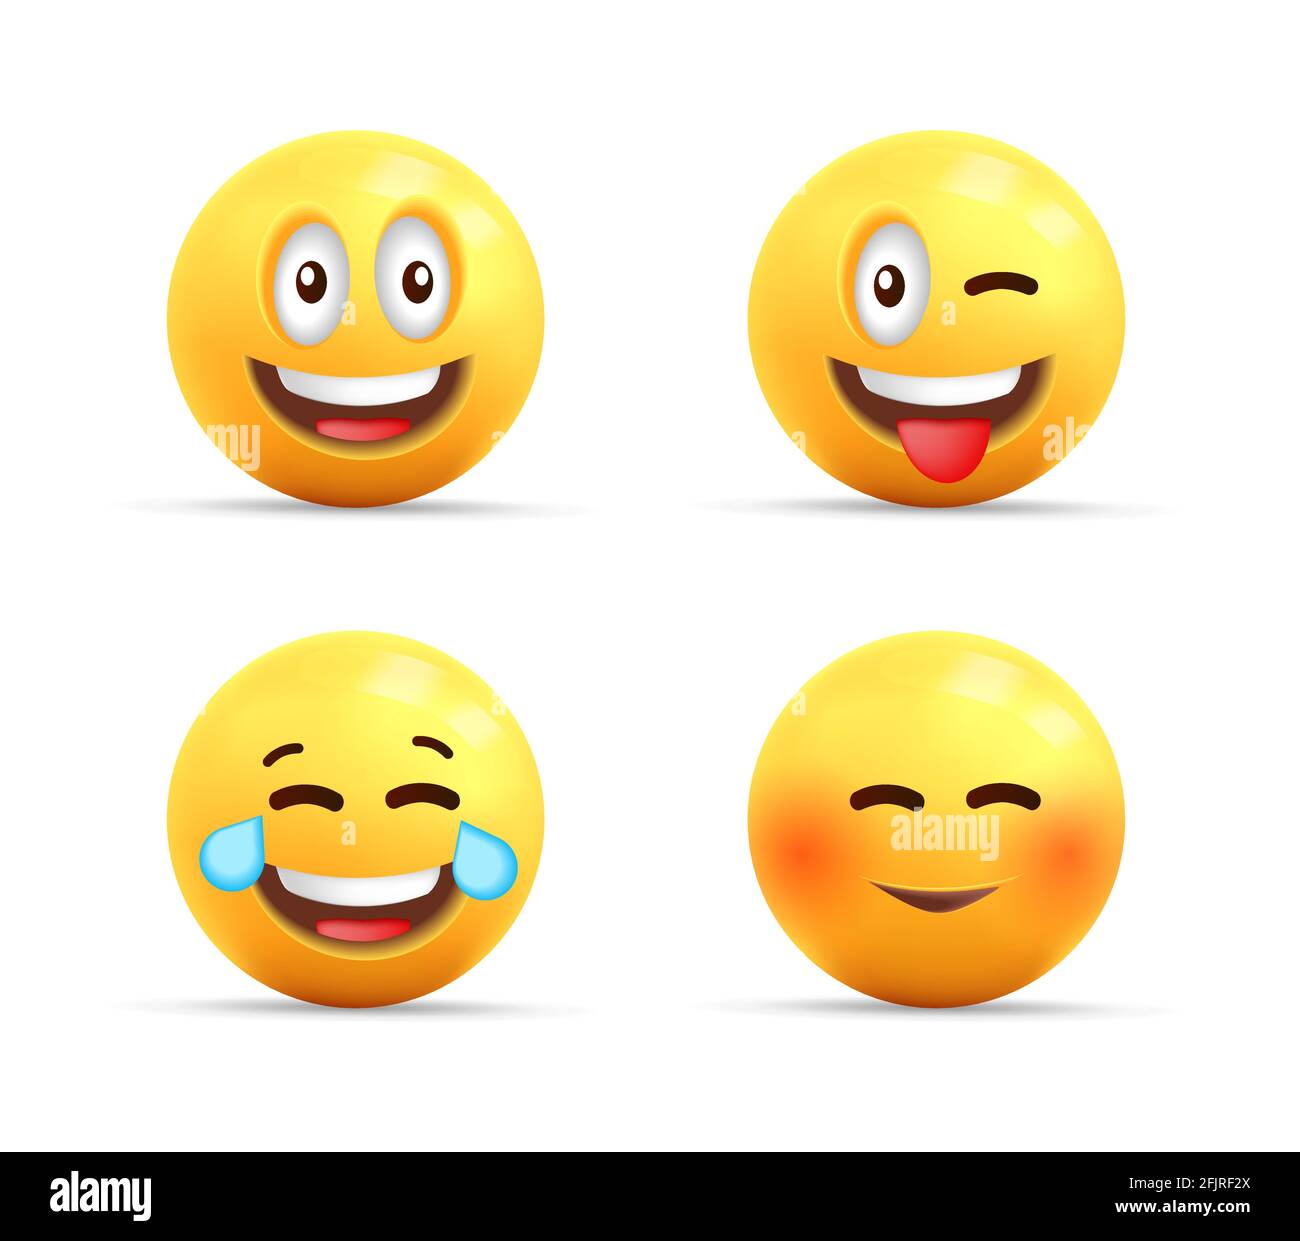 Smiley visage icônes 3d ou des symboles jaunes avec des expressions heureuses, des personnages sphériques riant, timide et avec la langue définie Illustration de Vecteur